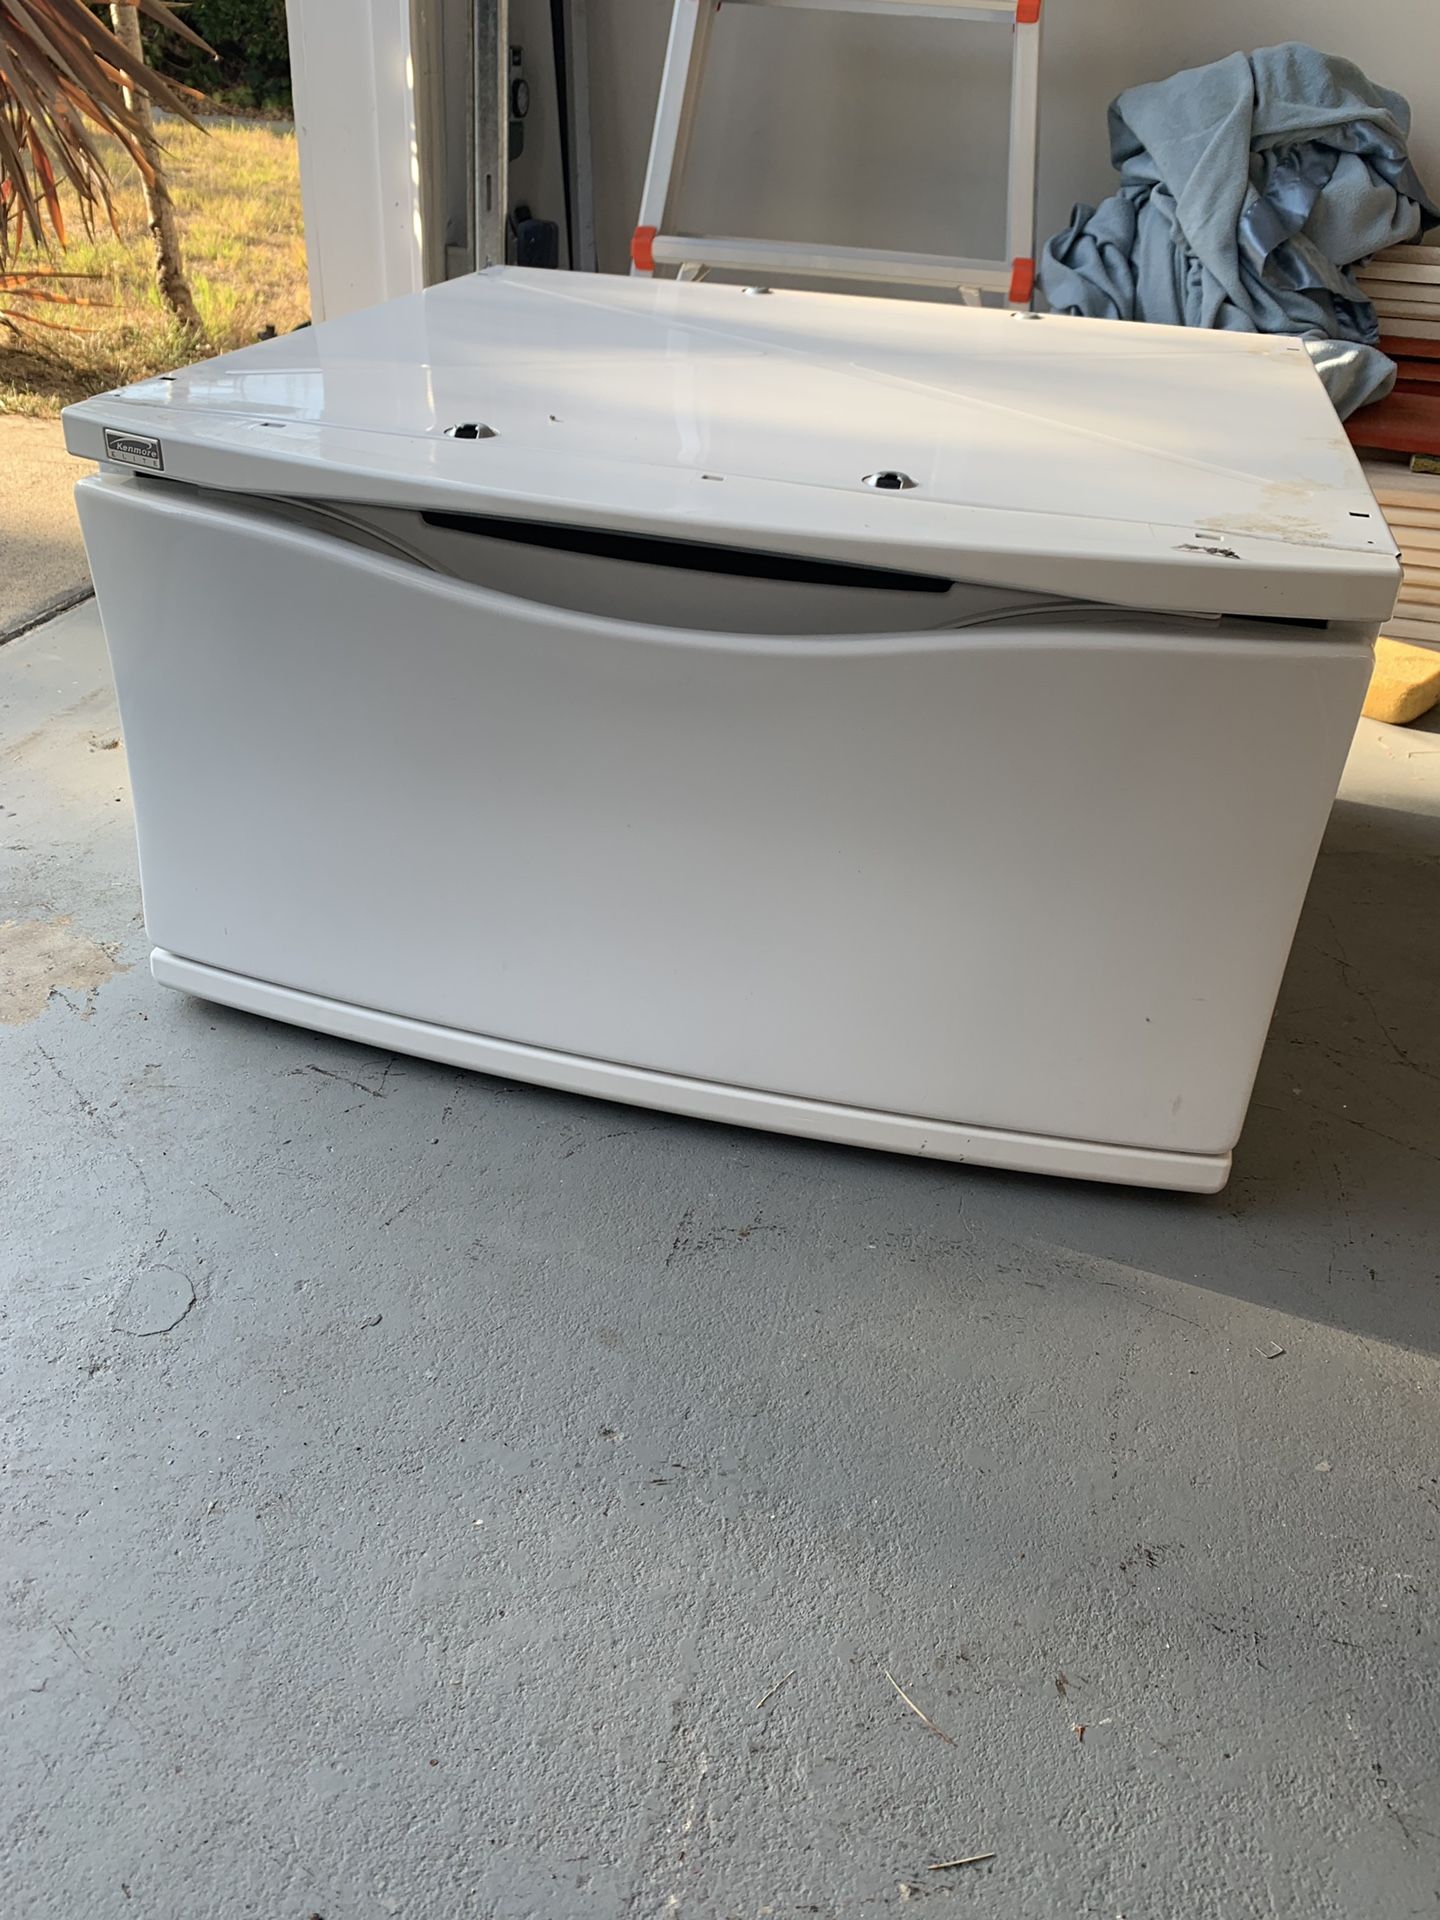 Dryer/washer drawer